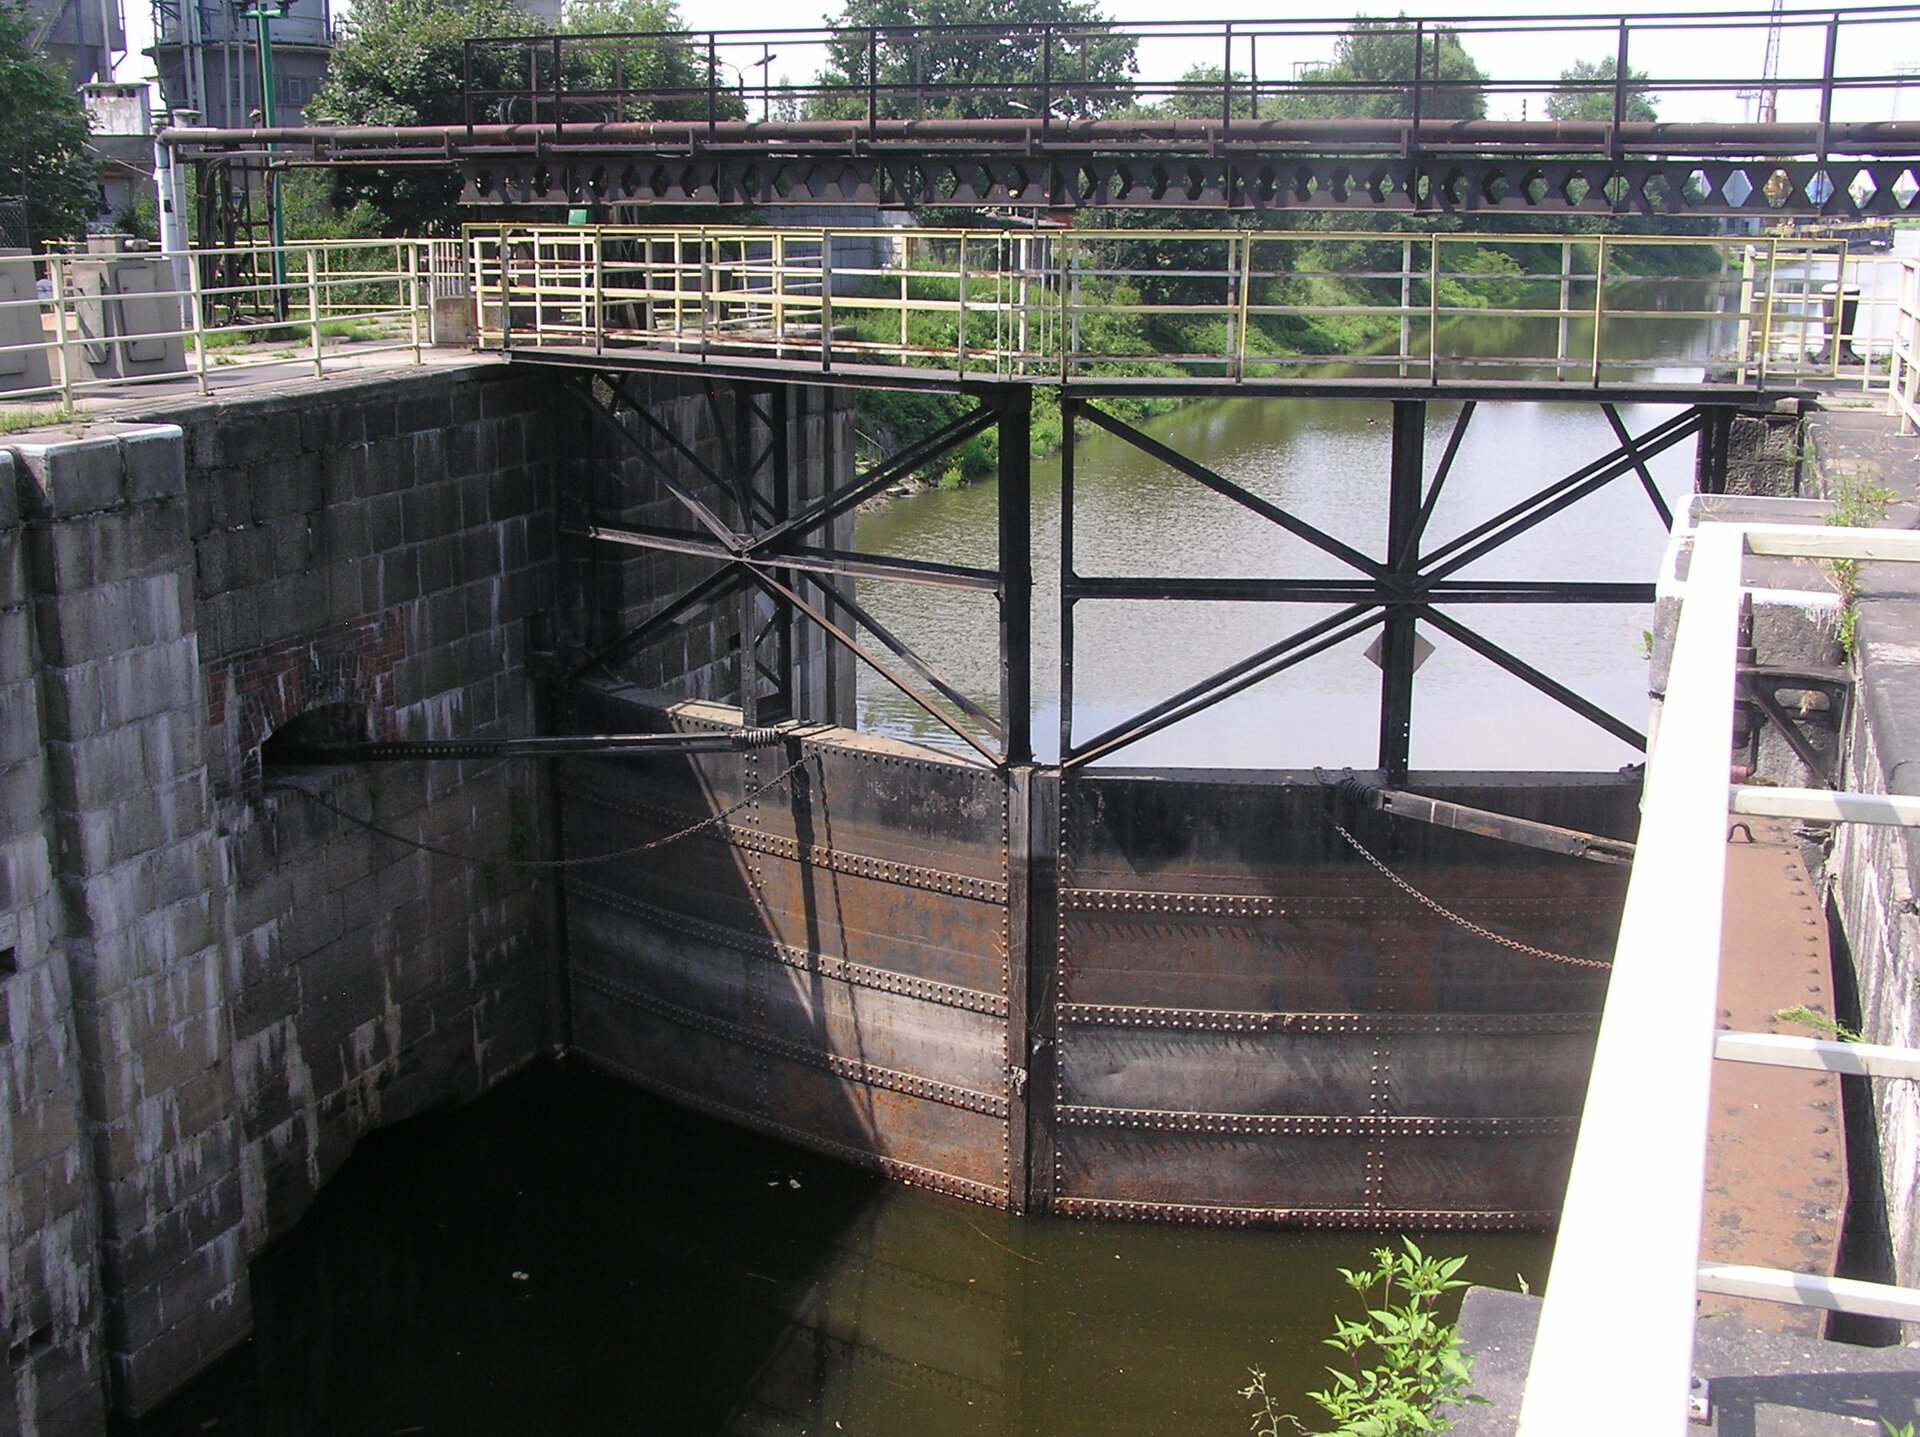 Widok komory w kierunku wrót dolnych. Ściany komory kanału mają wysokość prawie 9 m i wykonane są z bloków granitu. Do zamykania i otwierania bramy przeciwpowodziowej służą wrota wykonane ze stali konstrukcji nitowanej. Poziom wody rzeki jest niski.